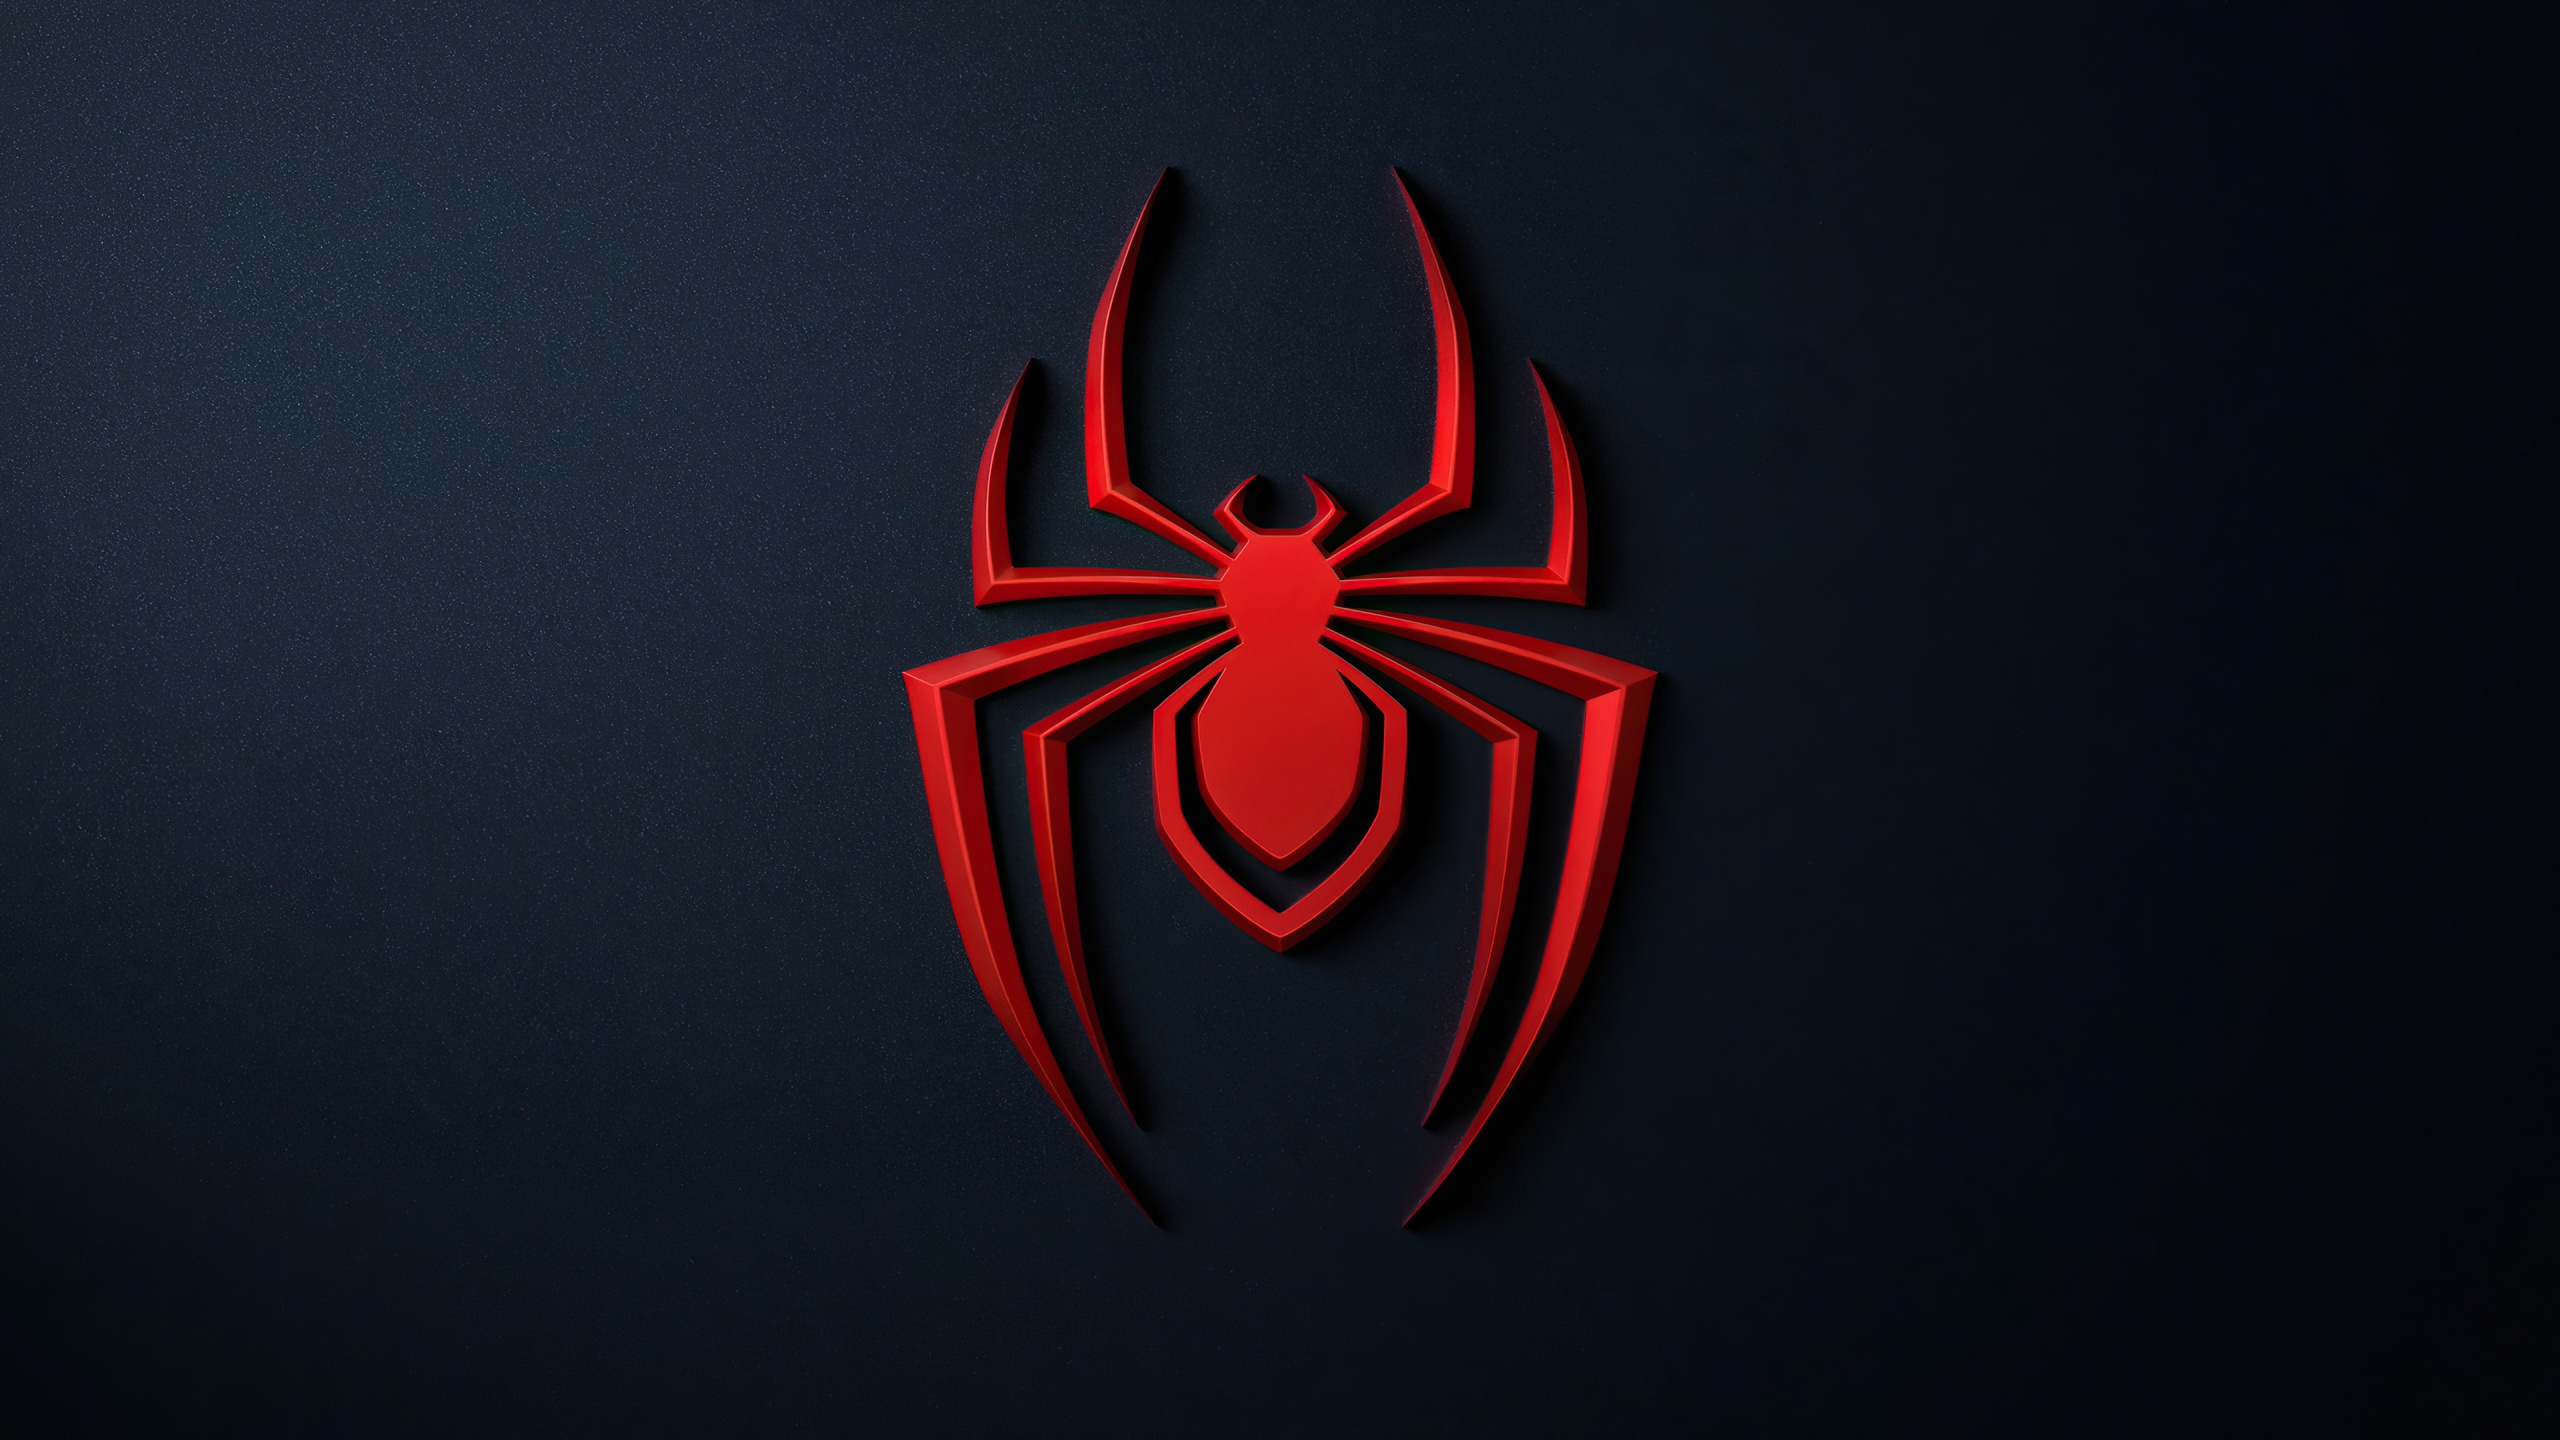 Spider Man Miles Morales 4k Wallpaper Playstation 5 2020 Games Black Dark 1275